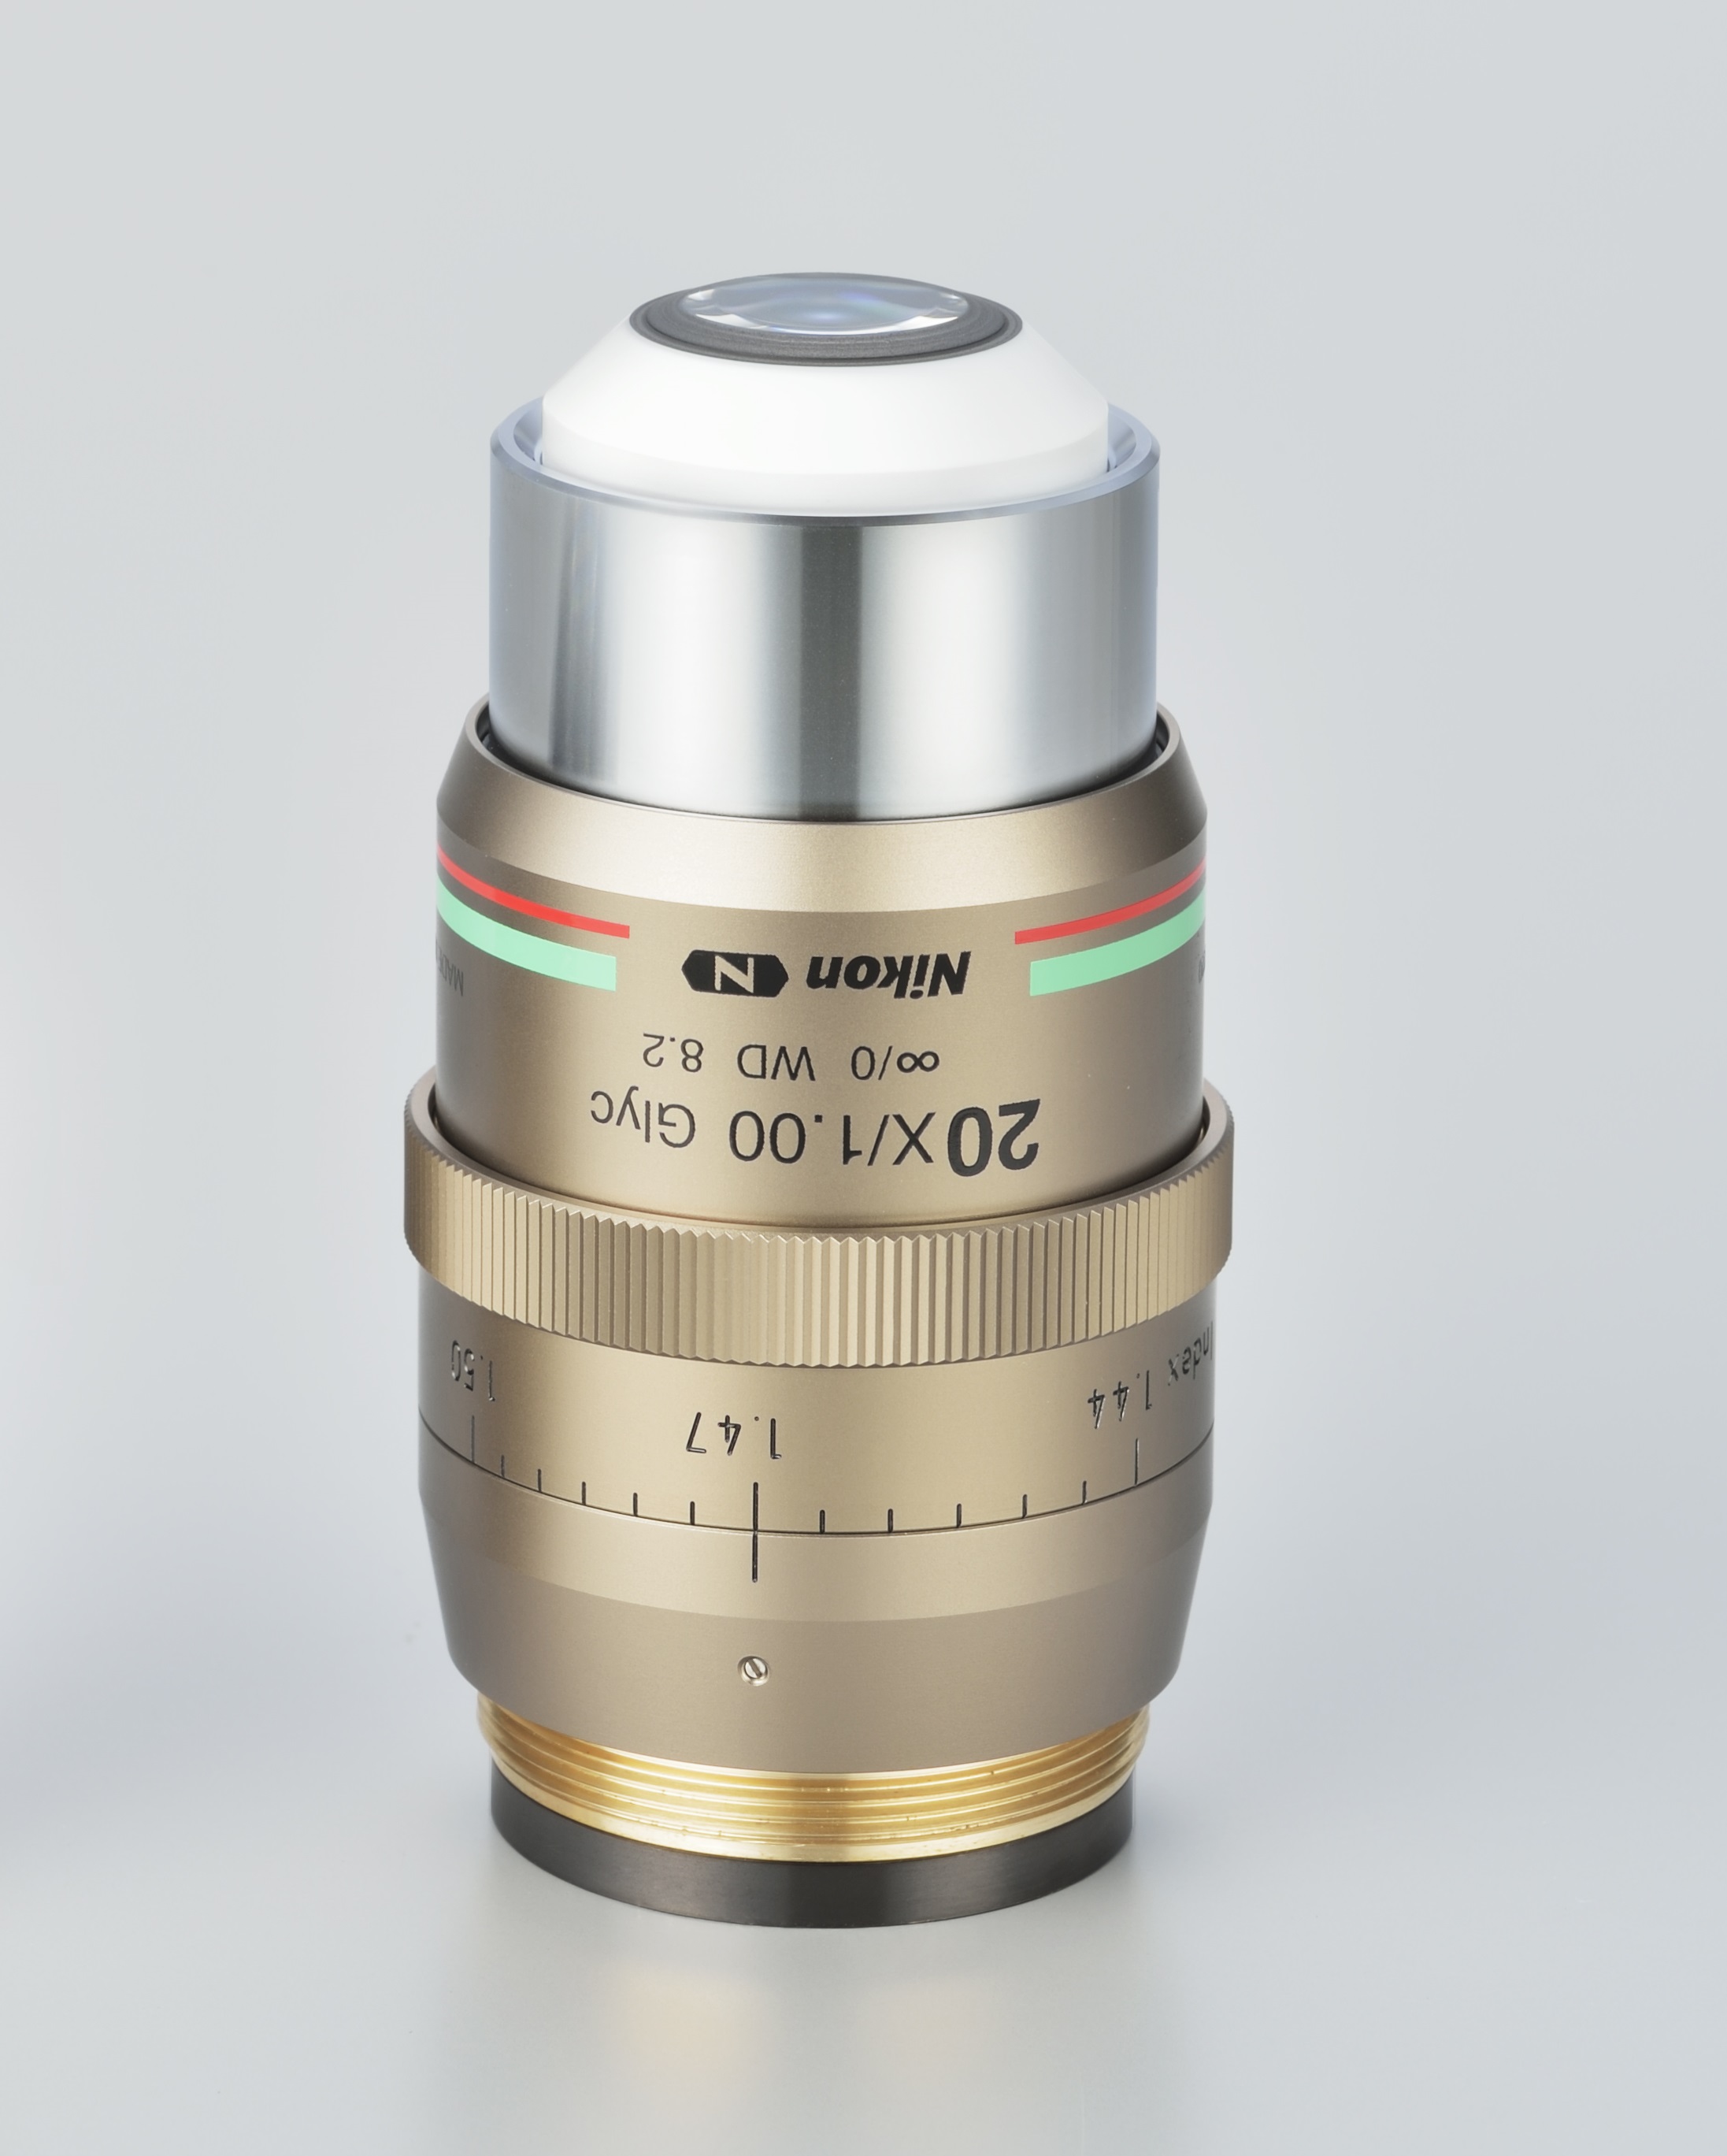 Nikon CFI90 20XC Glyc objective lens